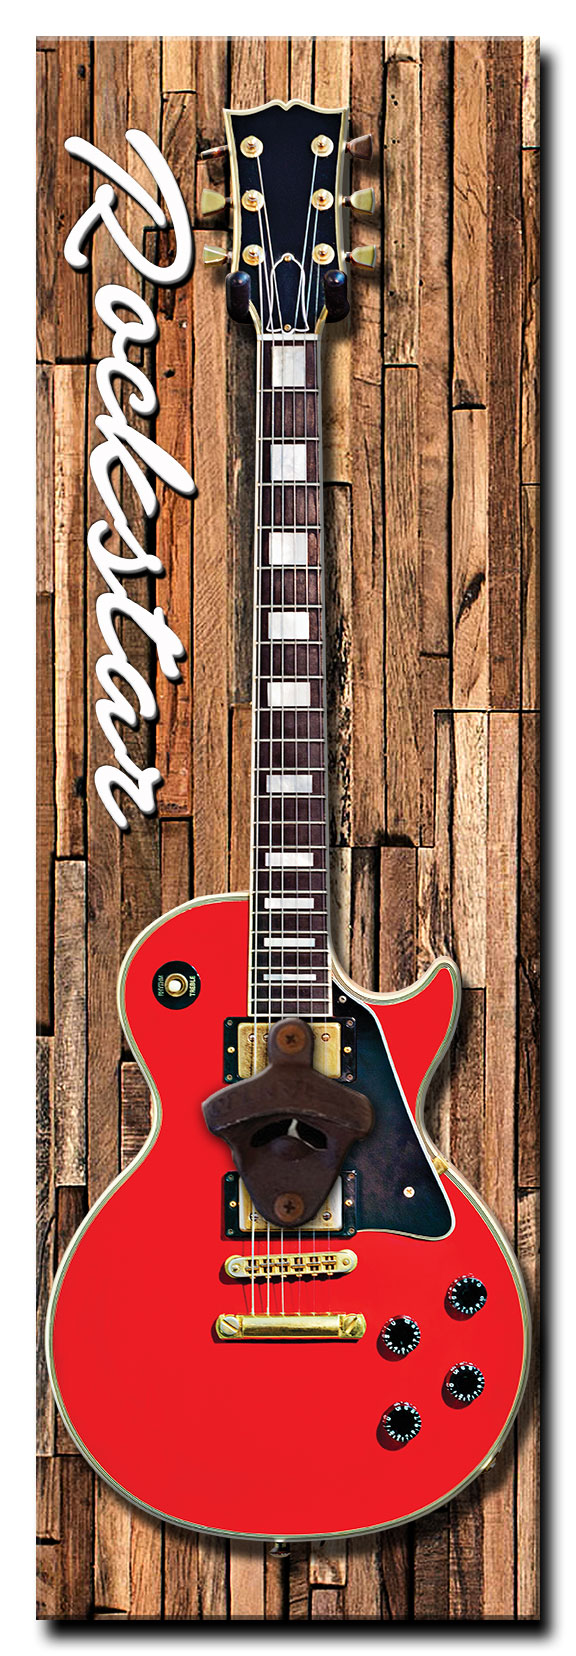 Rockstar Guitar Bottle Opener Vintage Sign